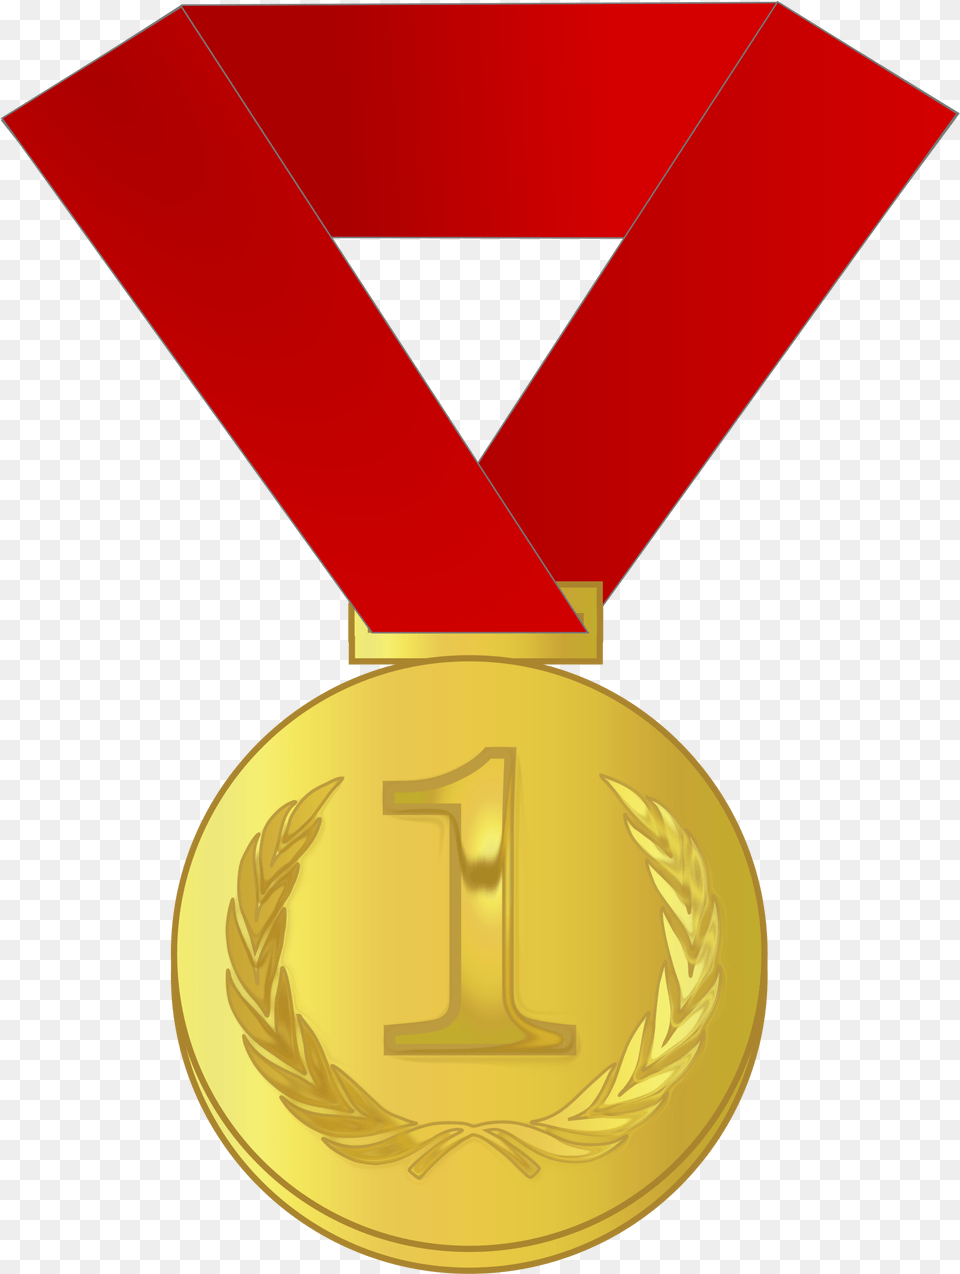 Gold Station Gold Medal, Gold Medal, Trophy Png Image